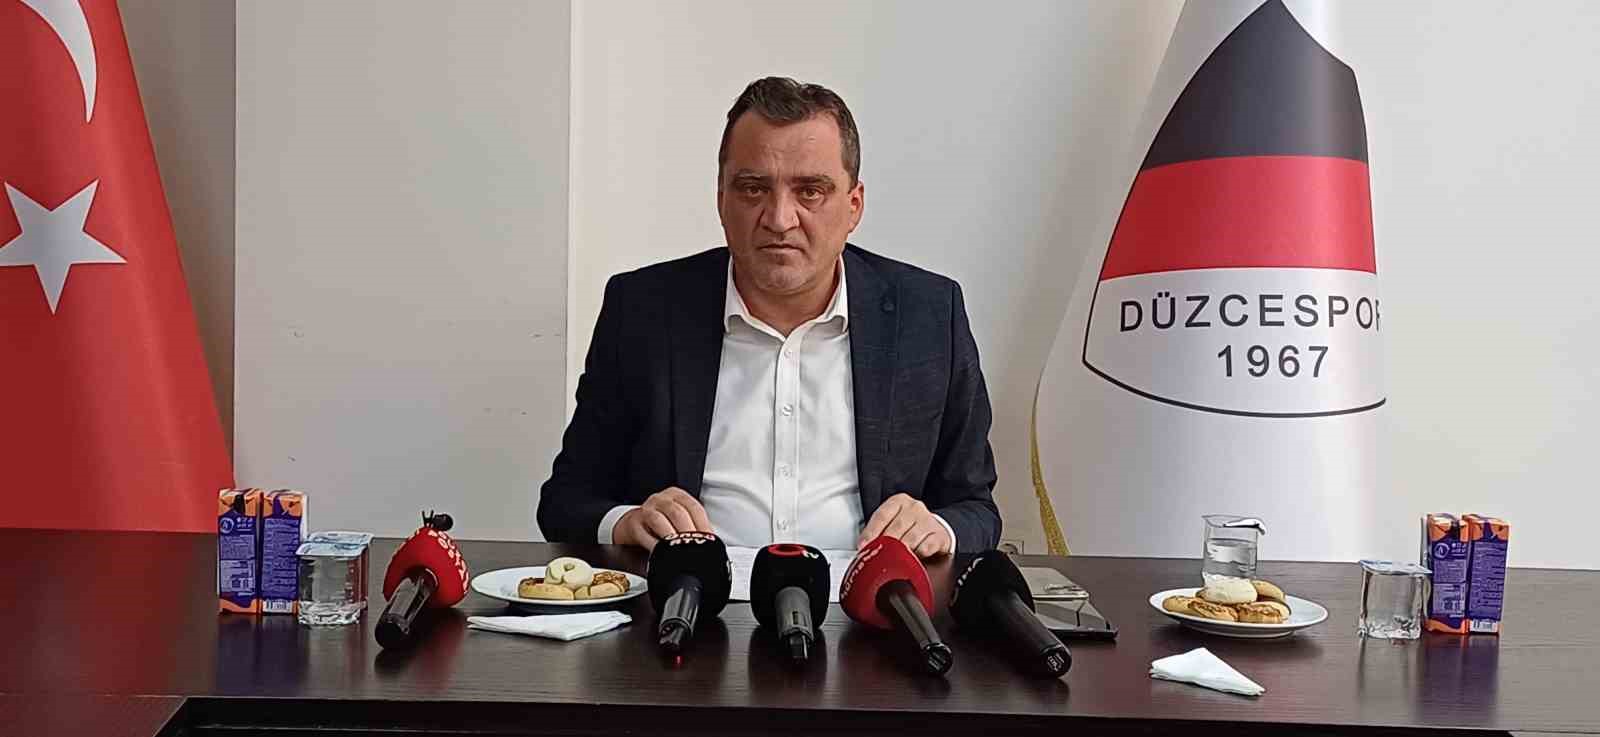 Düzcespor Kayyum Başkanı Kaltu: "Düştük ama çıkacağız"